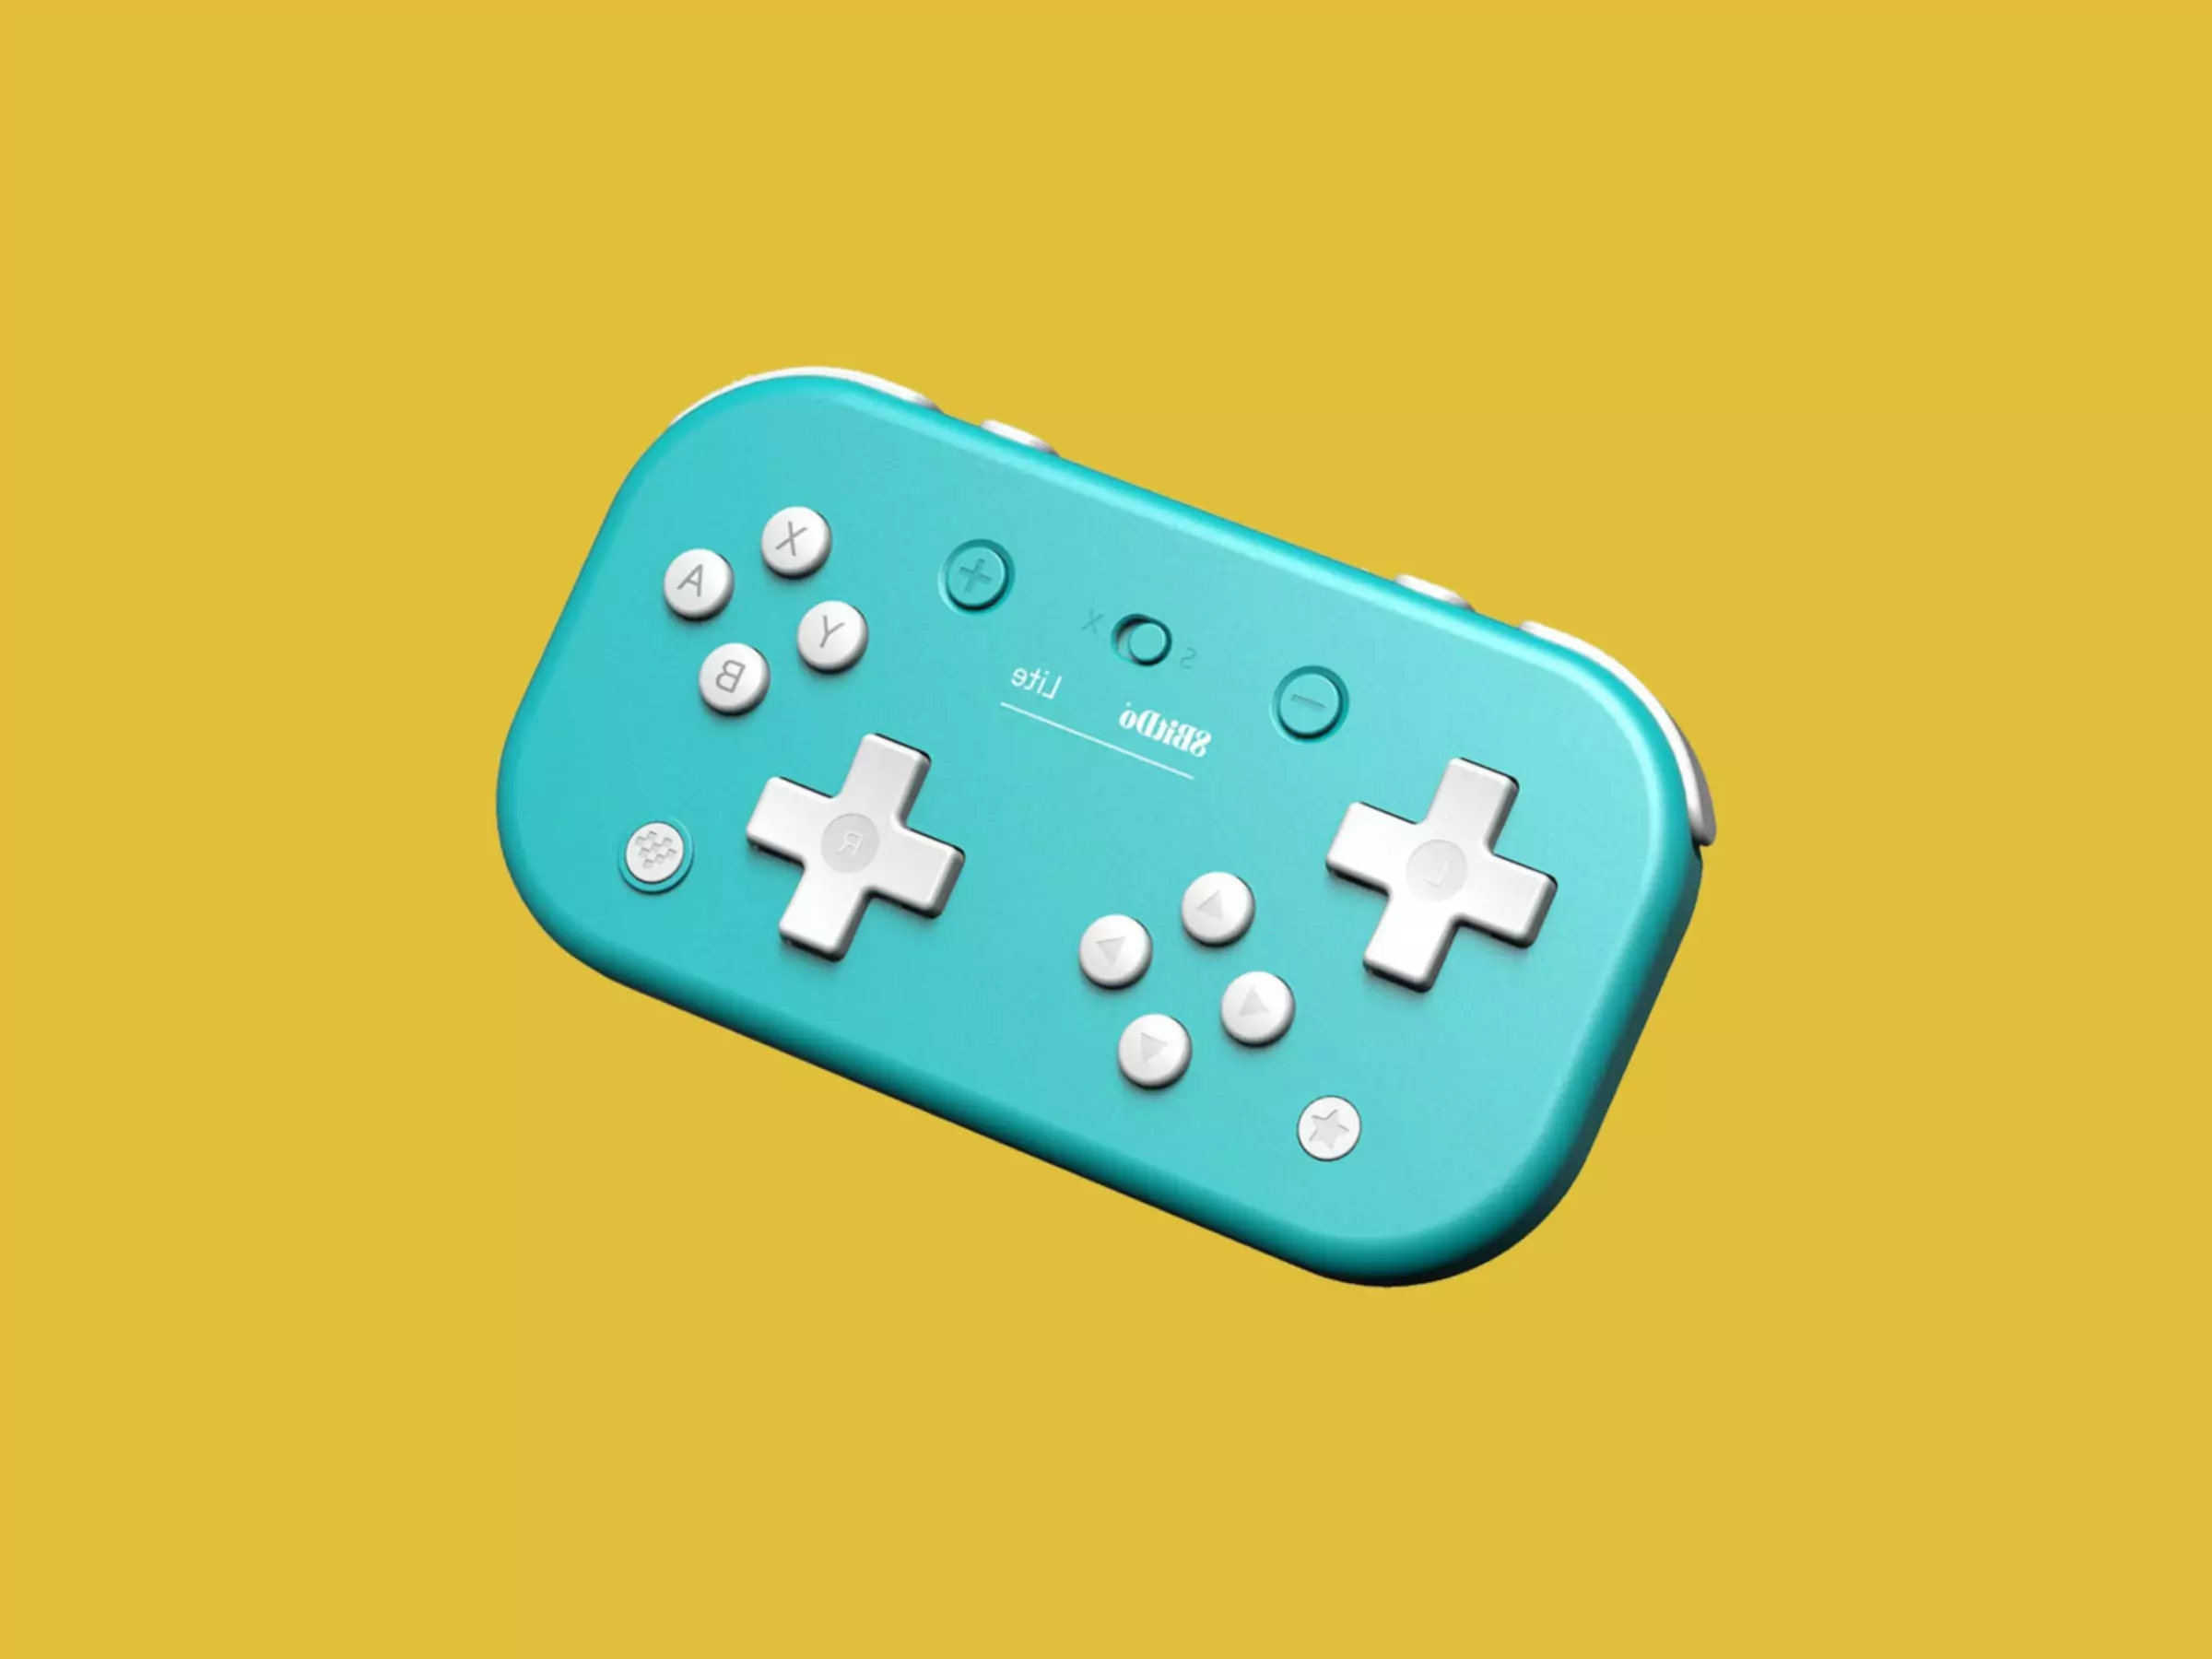 Nintendo Switch için 8BitDo Lite SE kontrol cihazı